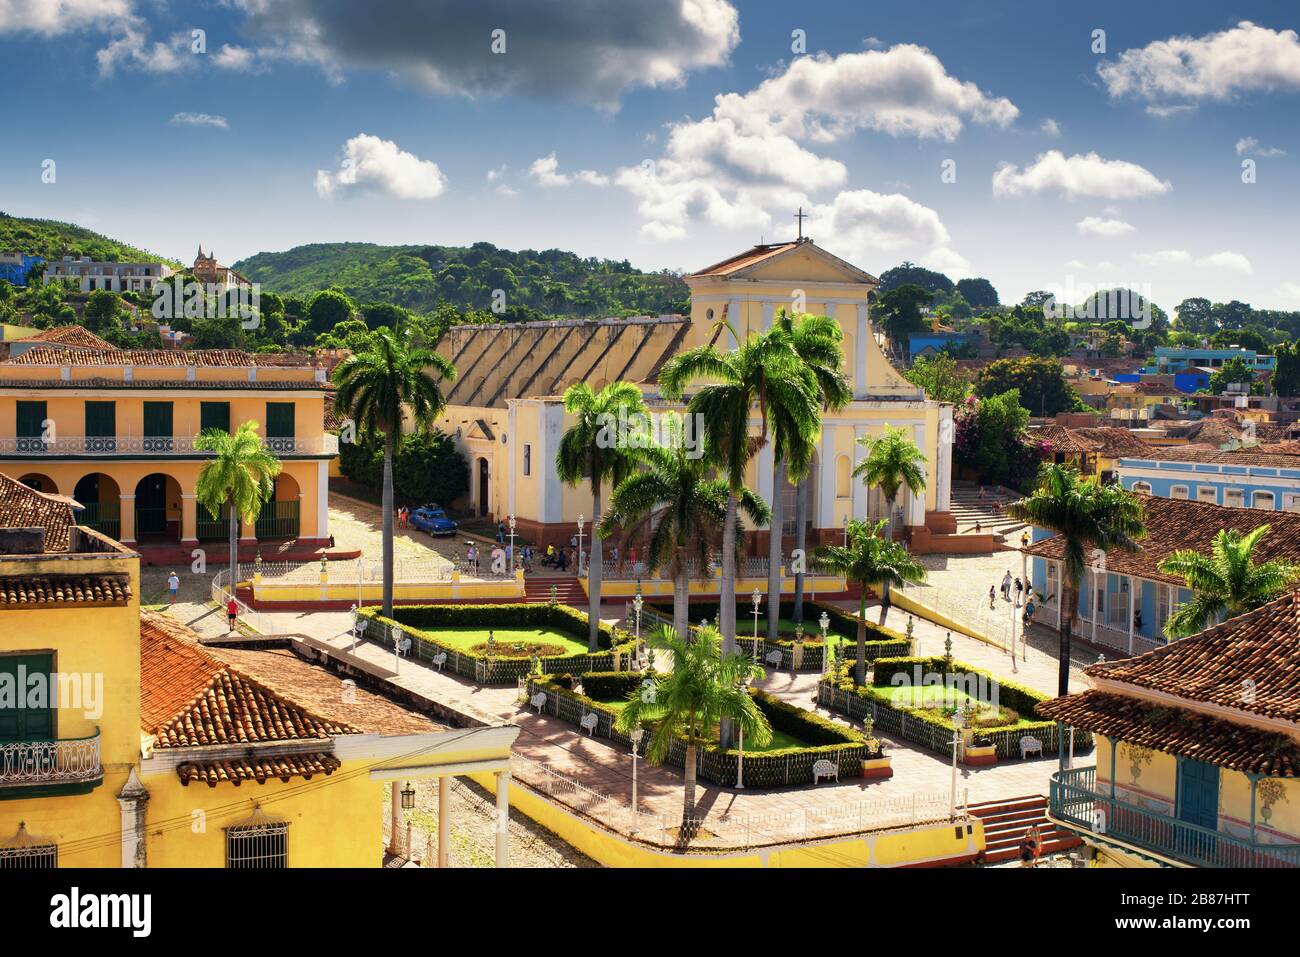 AERIL View of Trinidad Cuba, Church of the Holy Trinity and Plaza Mayor. Stock Photo